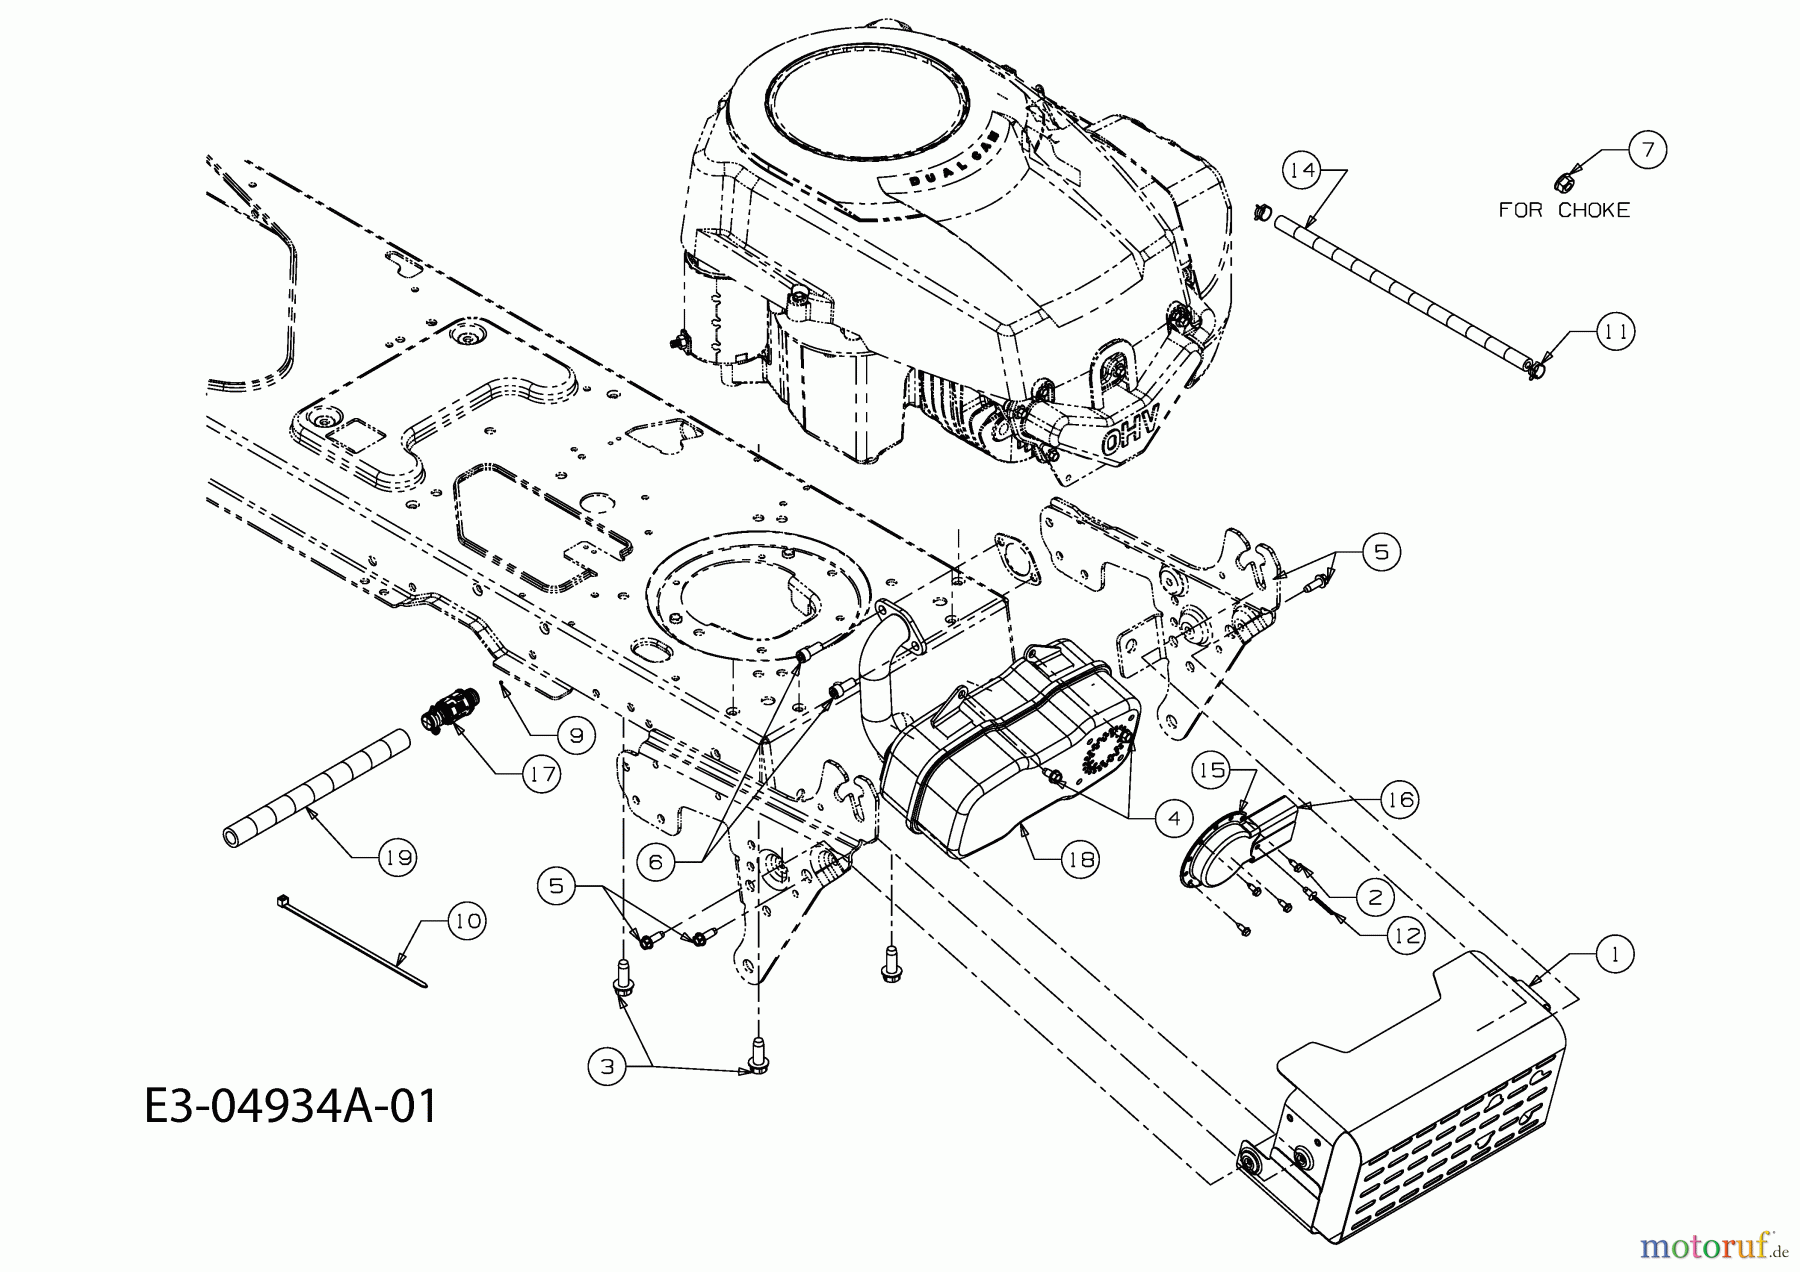  Gutbrod Rasentraktoren GLX 105 RH 13AV51GN690  (2009) Motorzubehör